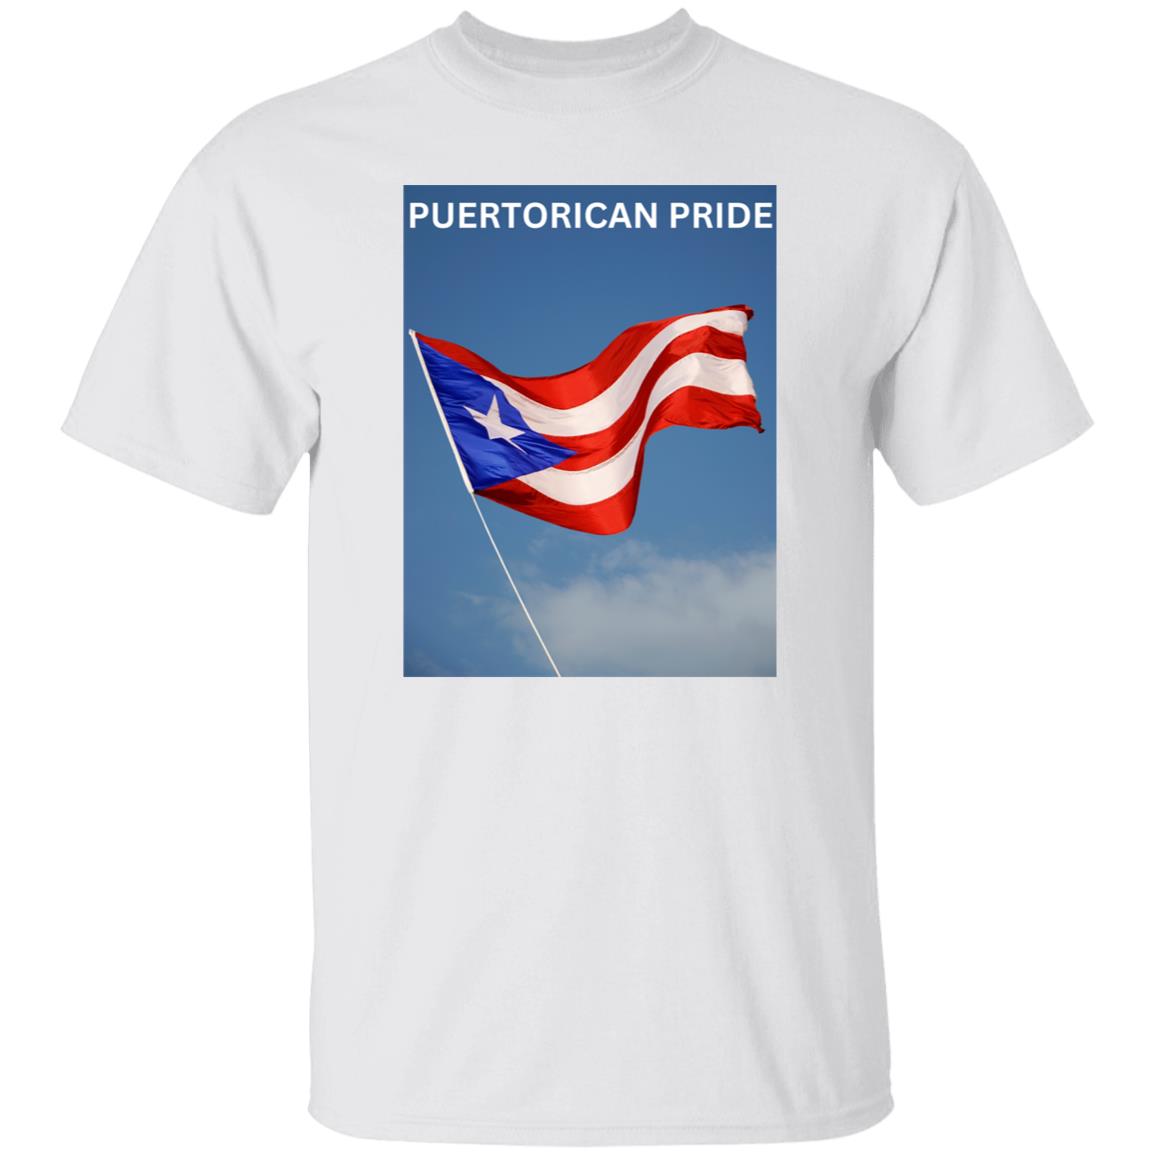 PUERTORICAN PRIDE   T Shirt